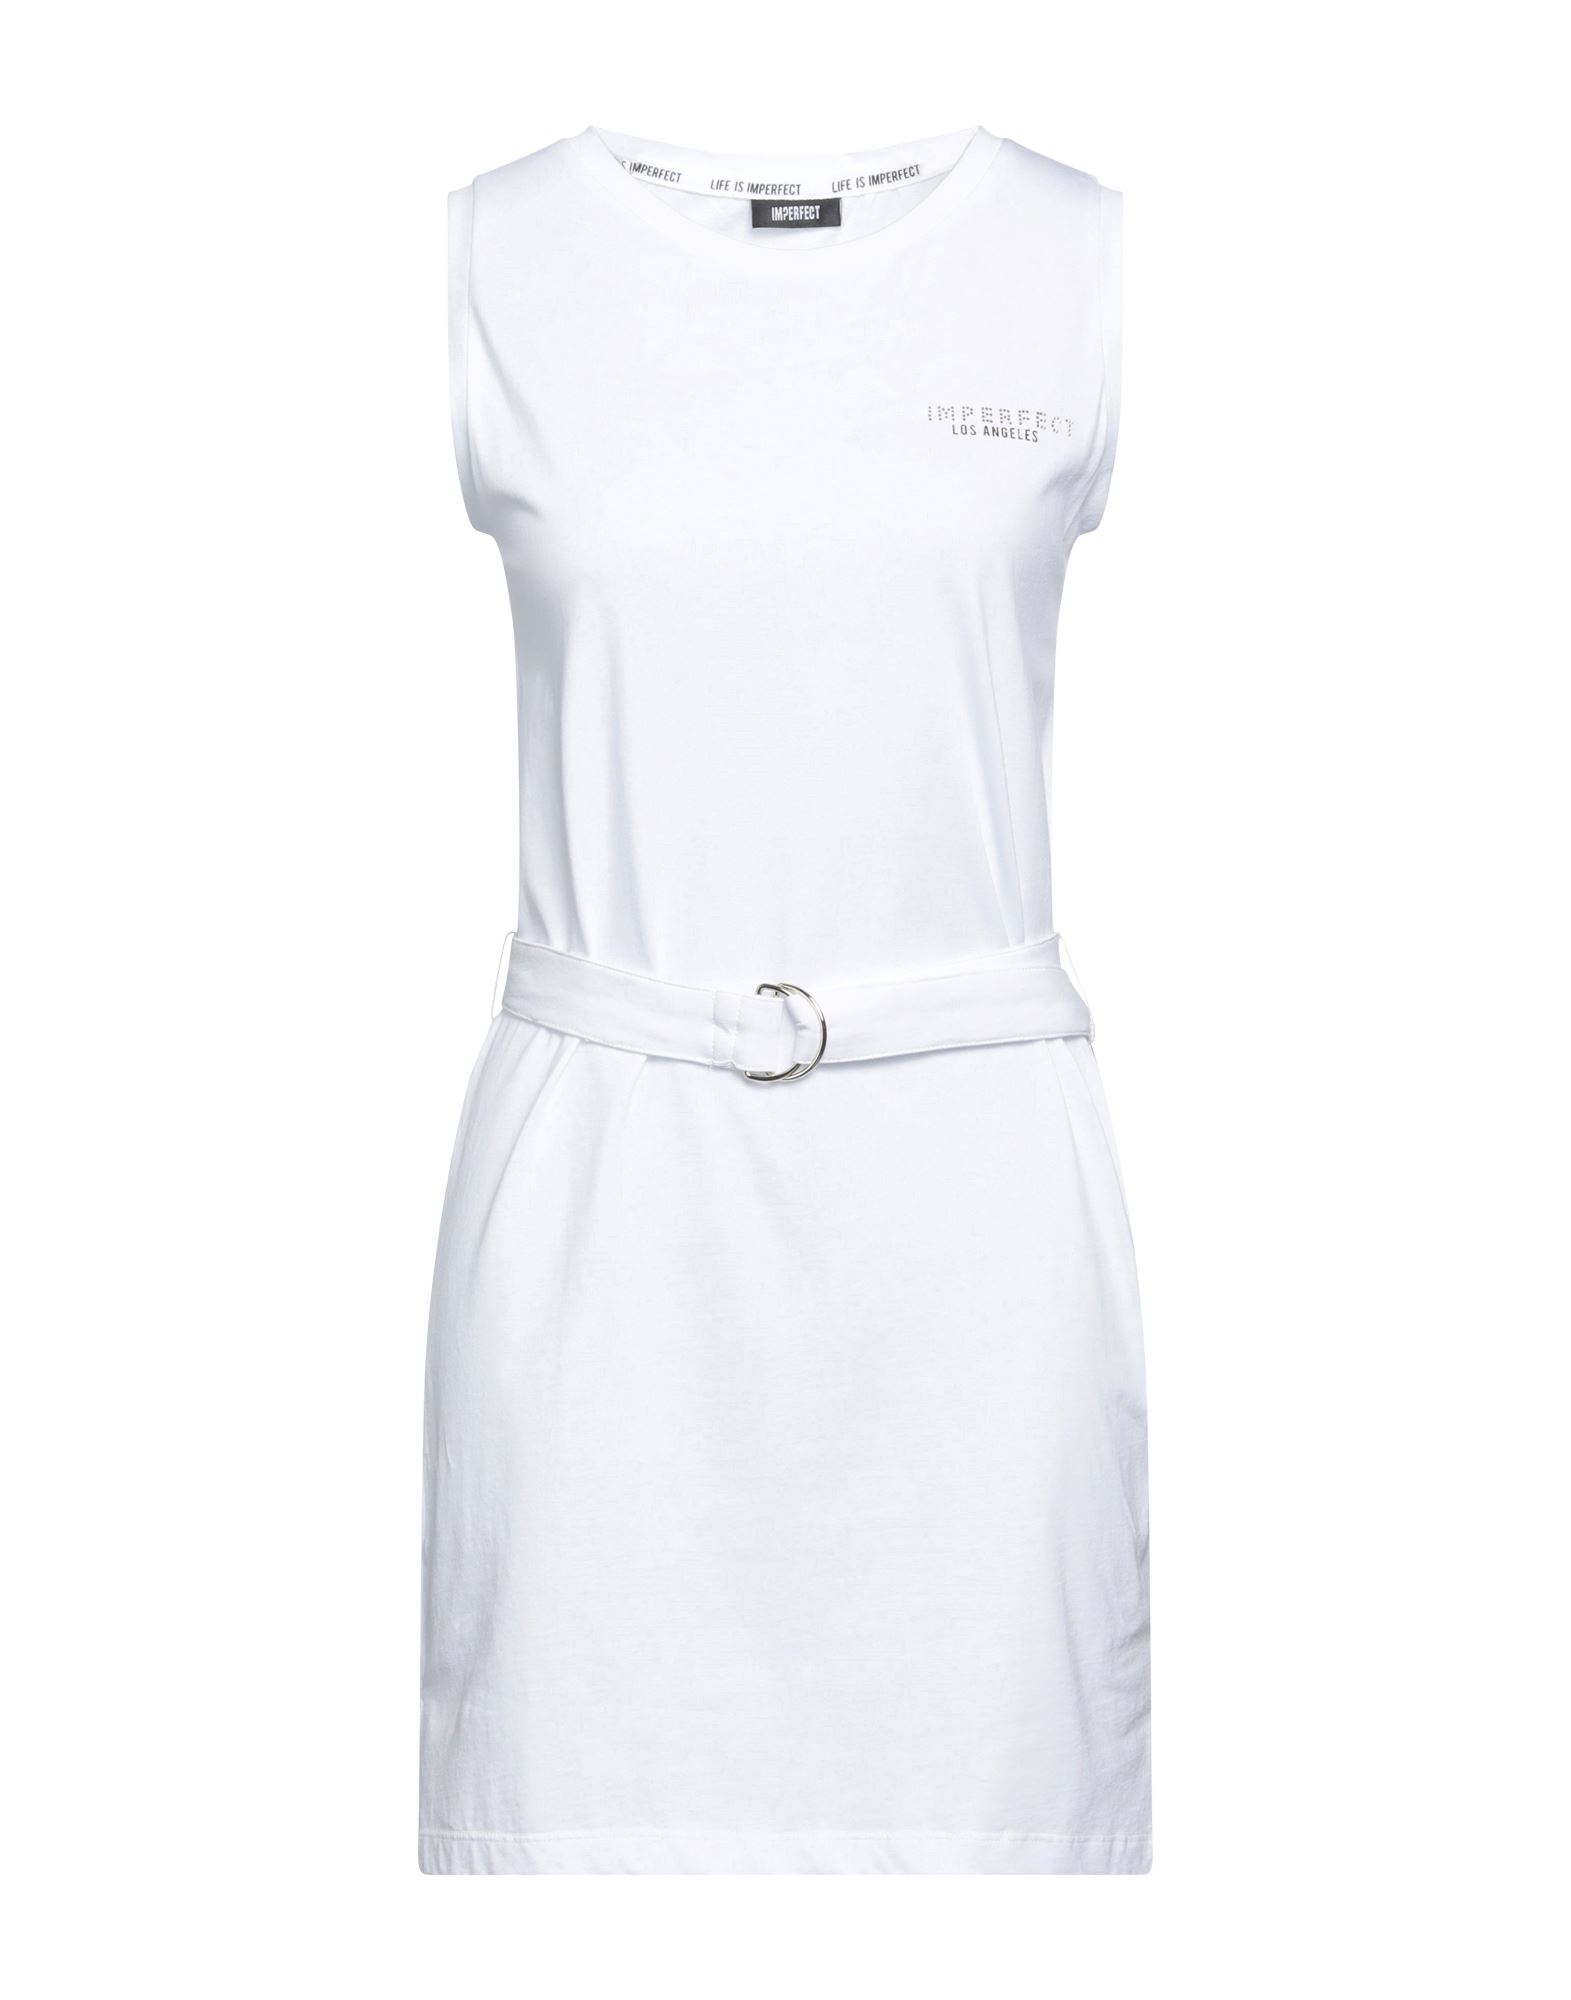 !m?erfect Woman Mini Dress White Size S Cotton